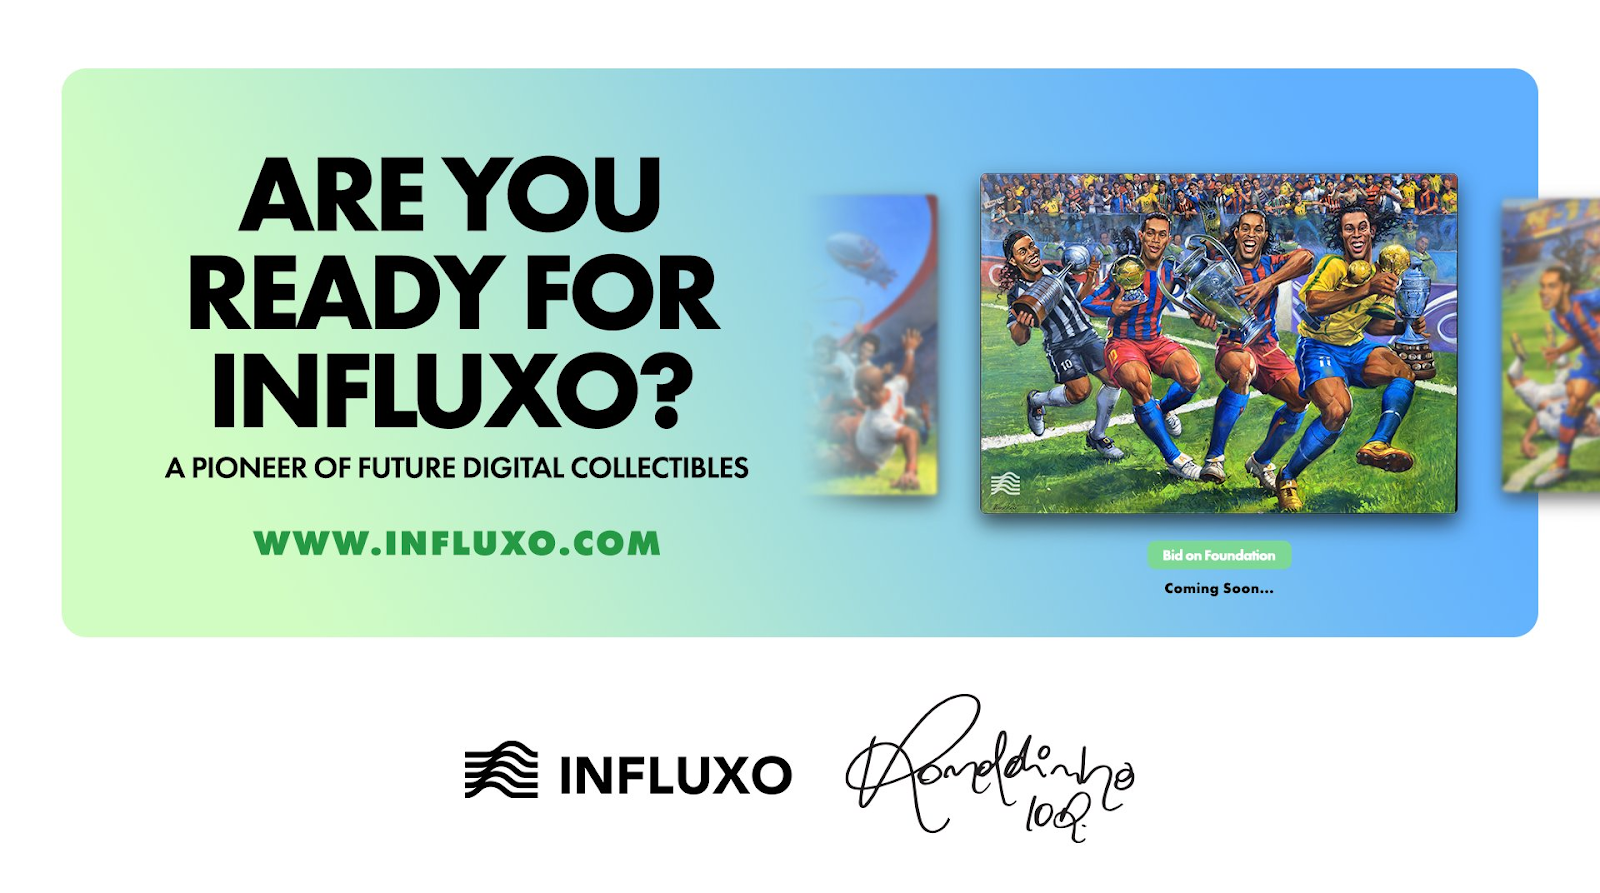 Influxo ra mắt thị trường NFT với bảy bộ sưu tập từ cầu thủ bóng đá người Brazil Ronaldinho